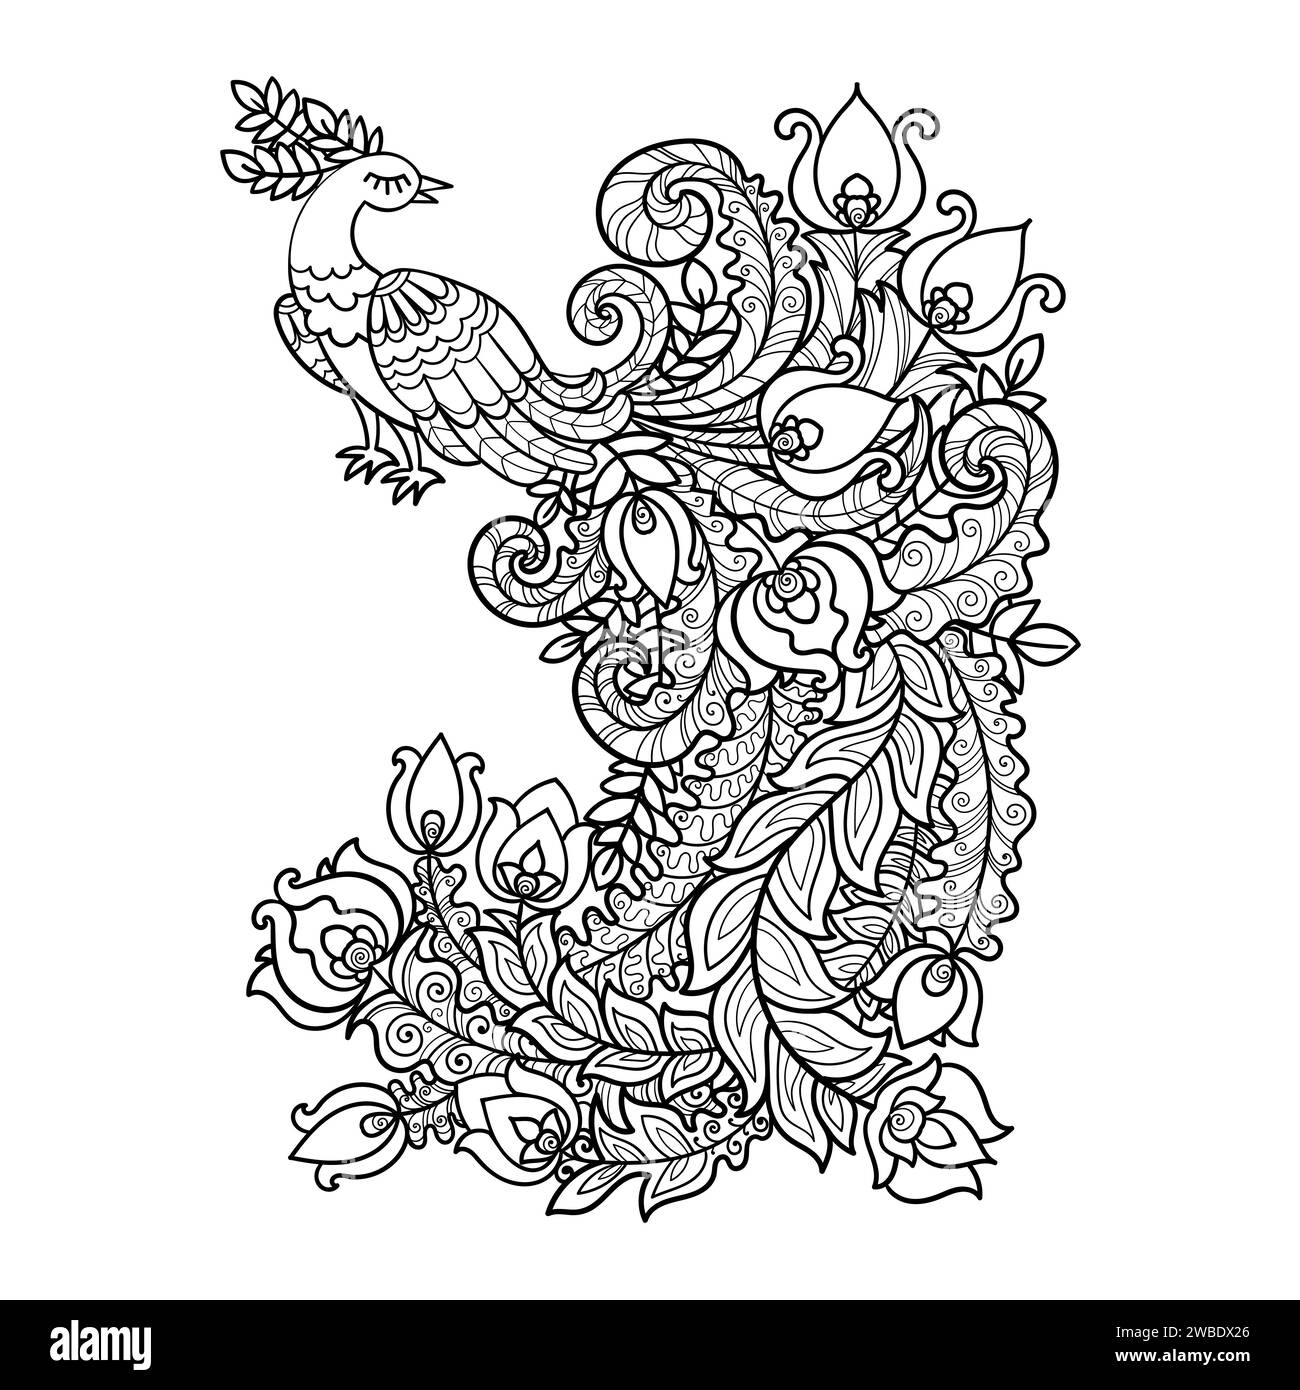 Peacock con una bella coda lunga. Disegno lineare in bianco e nero. Per la progettazione di libri da colorare per bambini e adulti, stampe, poster, cartoline, Illustrazione Vettoriale